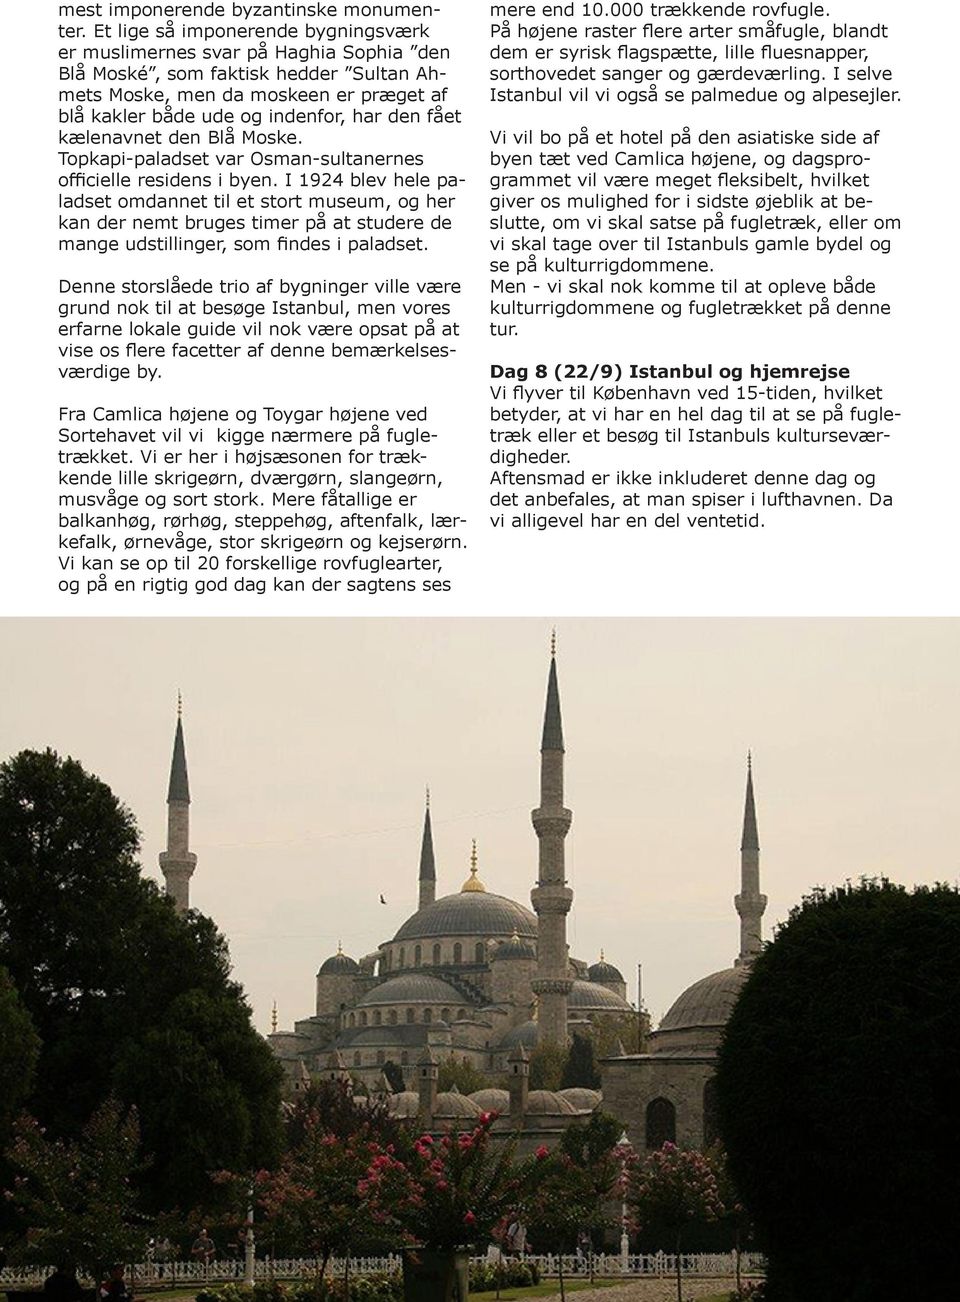 fået kælenavnet den Blå Moske. Topkapi-paladset var Osman-sultanernes officielle residens i byen.